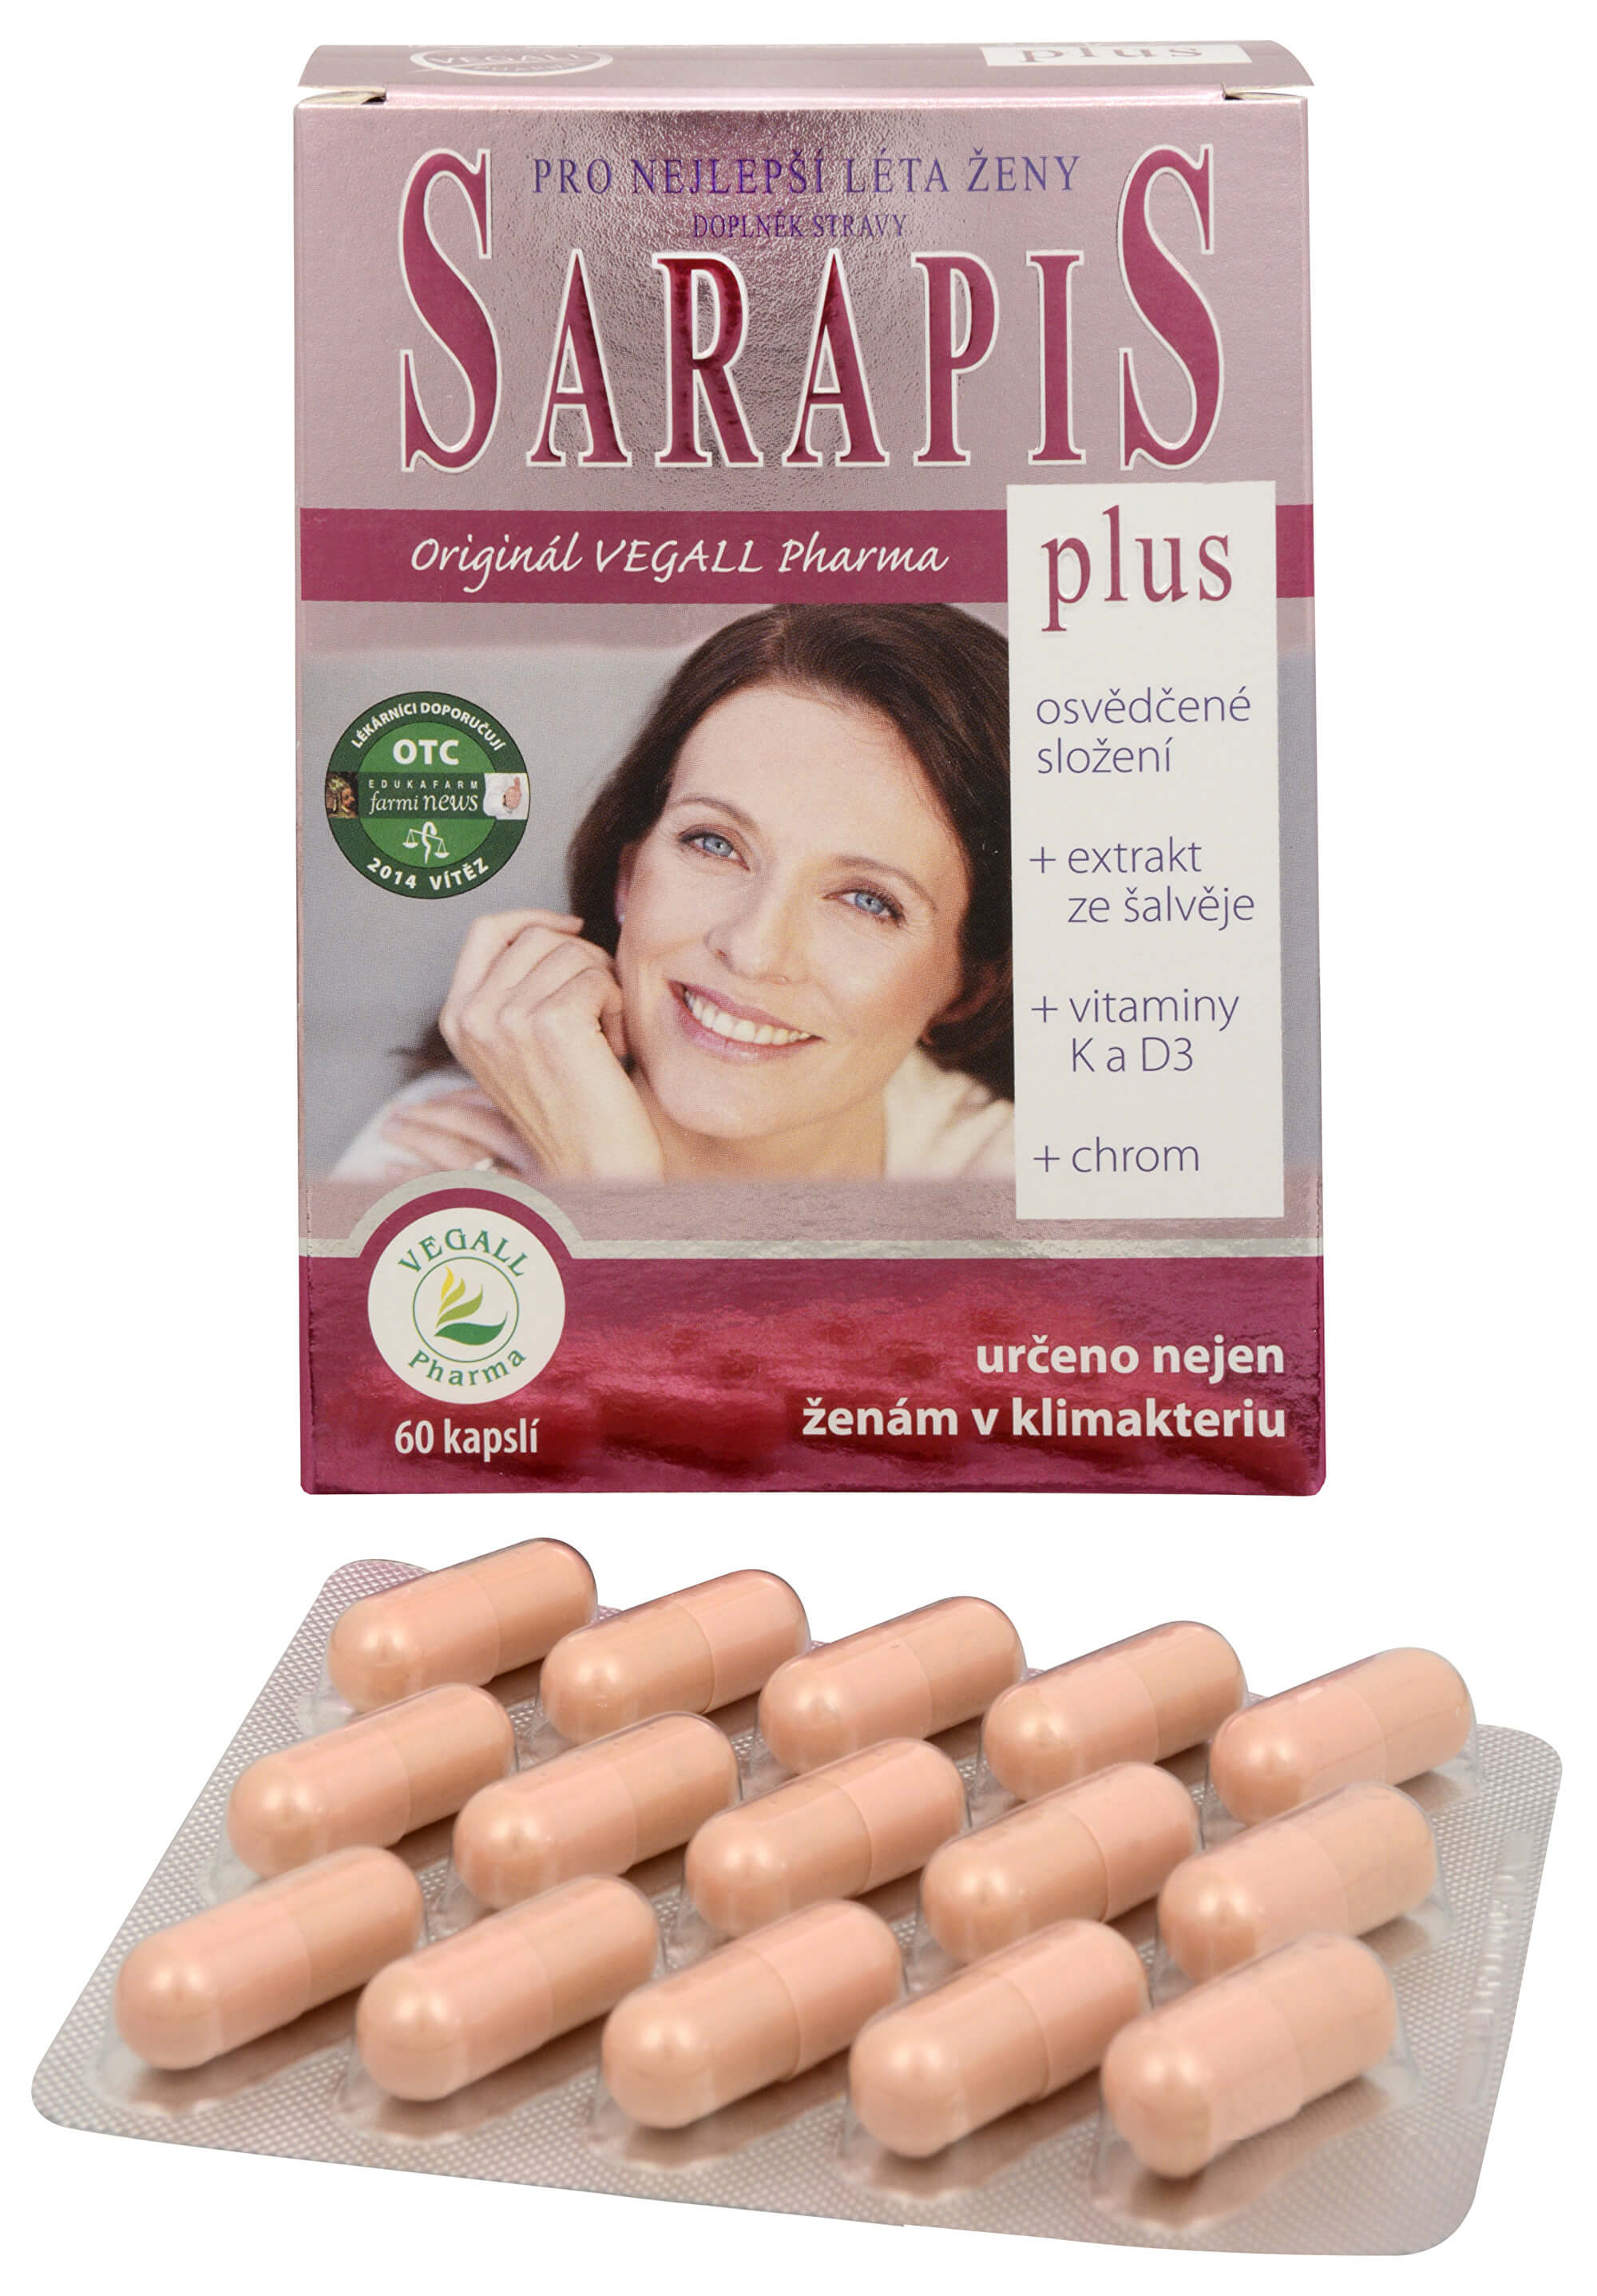 Vegall Pharma Sarapis Plus 60 kapslí + 2 mesiace na vrátenie tovaru